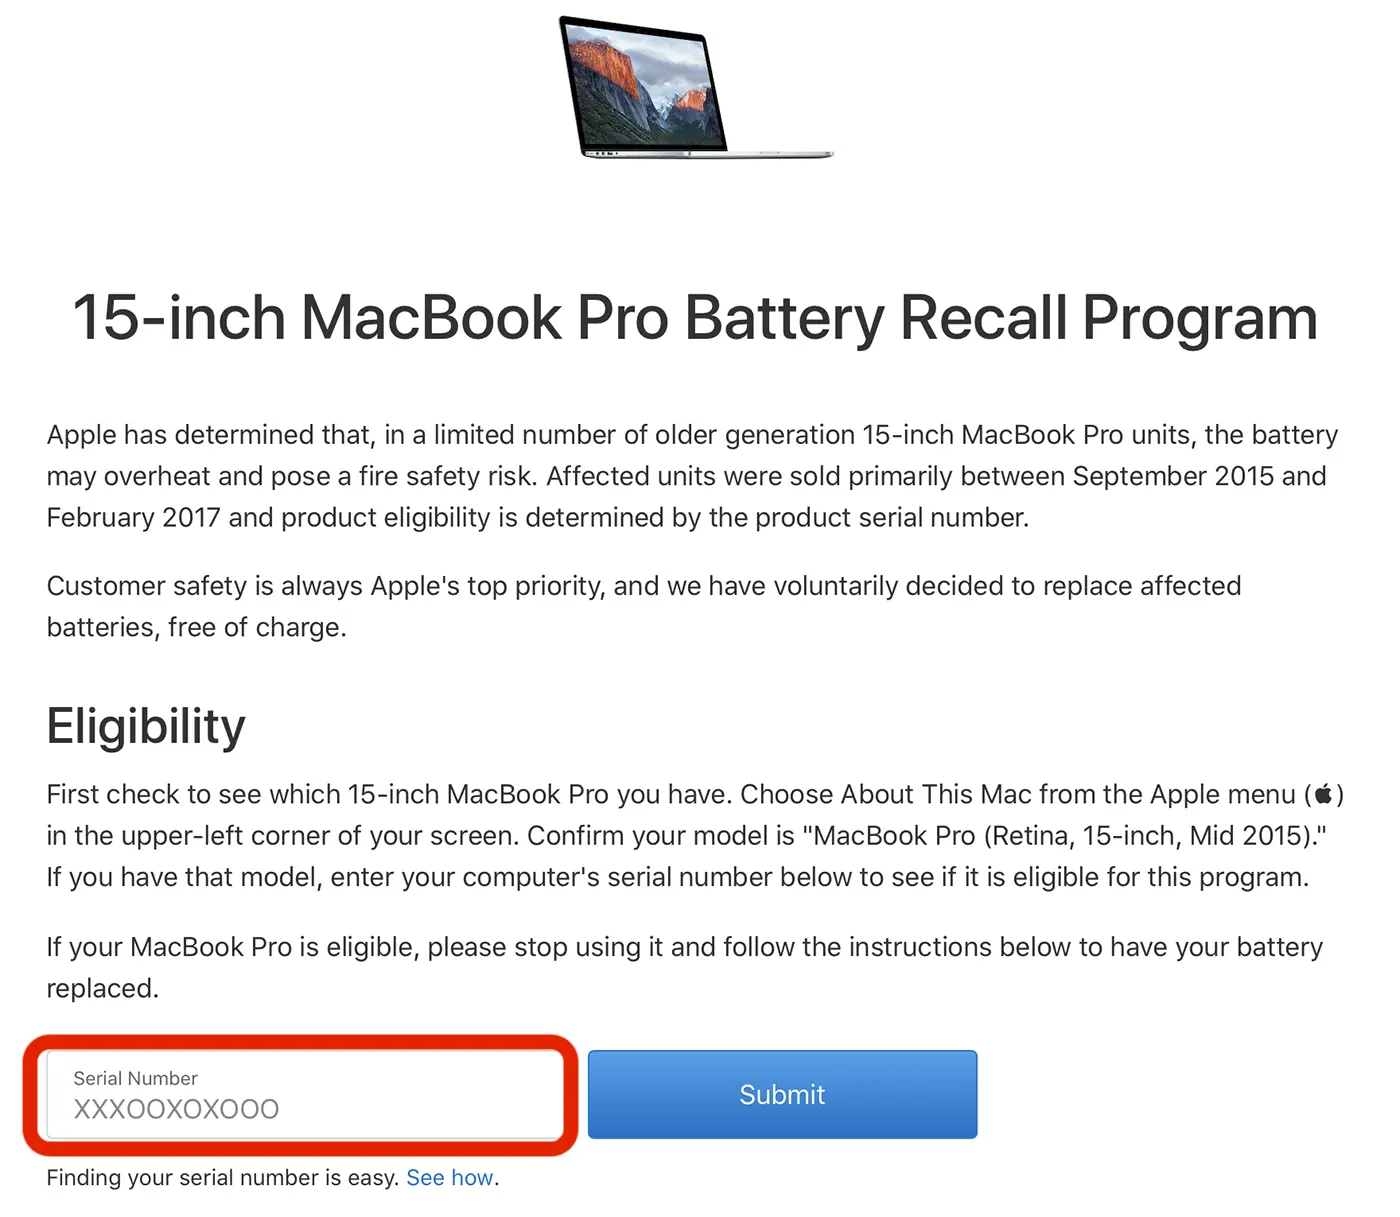 Baterii svého MacBooku můžete vyměnit zdarma. Viz podmínky